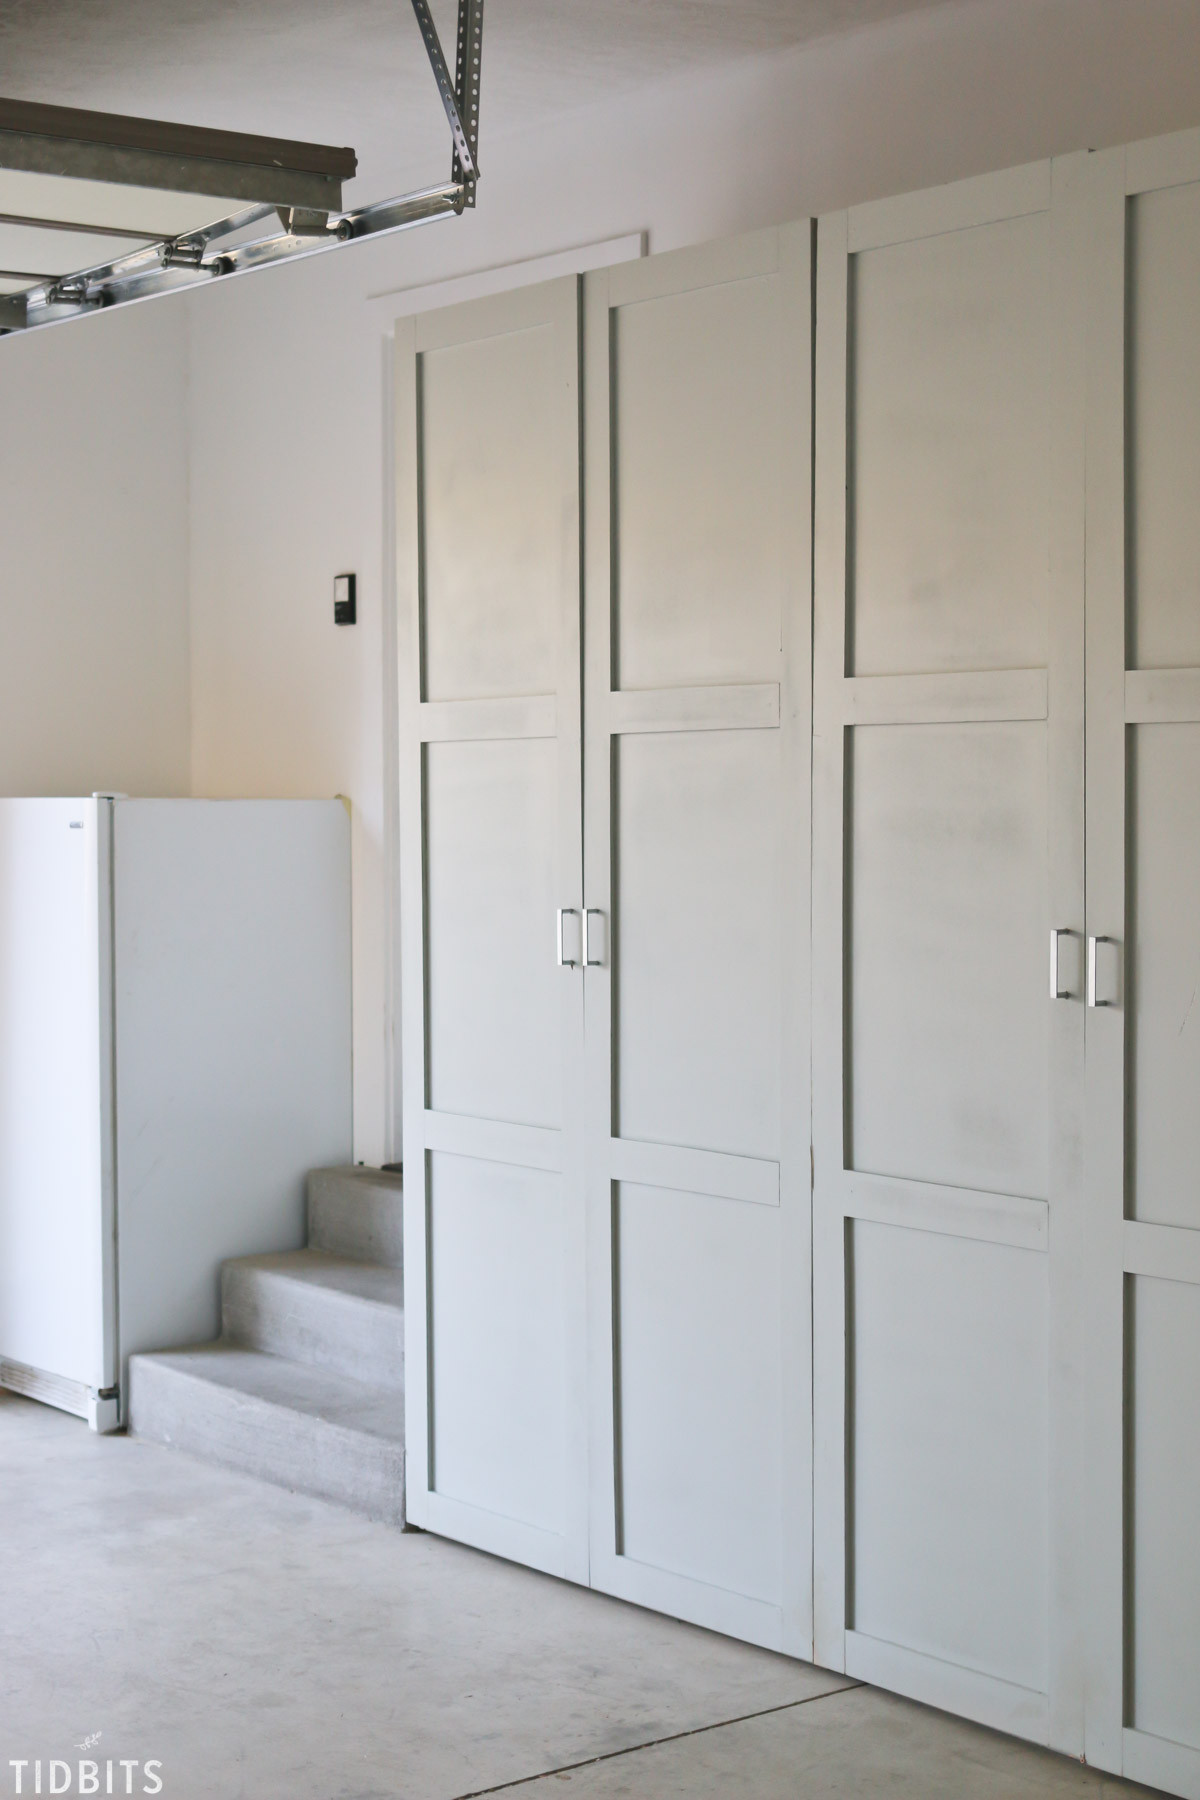 Best ideas about Garage Storage Cabinet
. Save or Pin Garage Storage Cabinets Now.